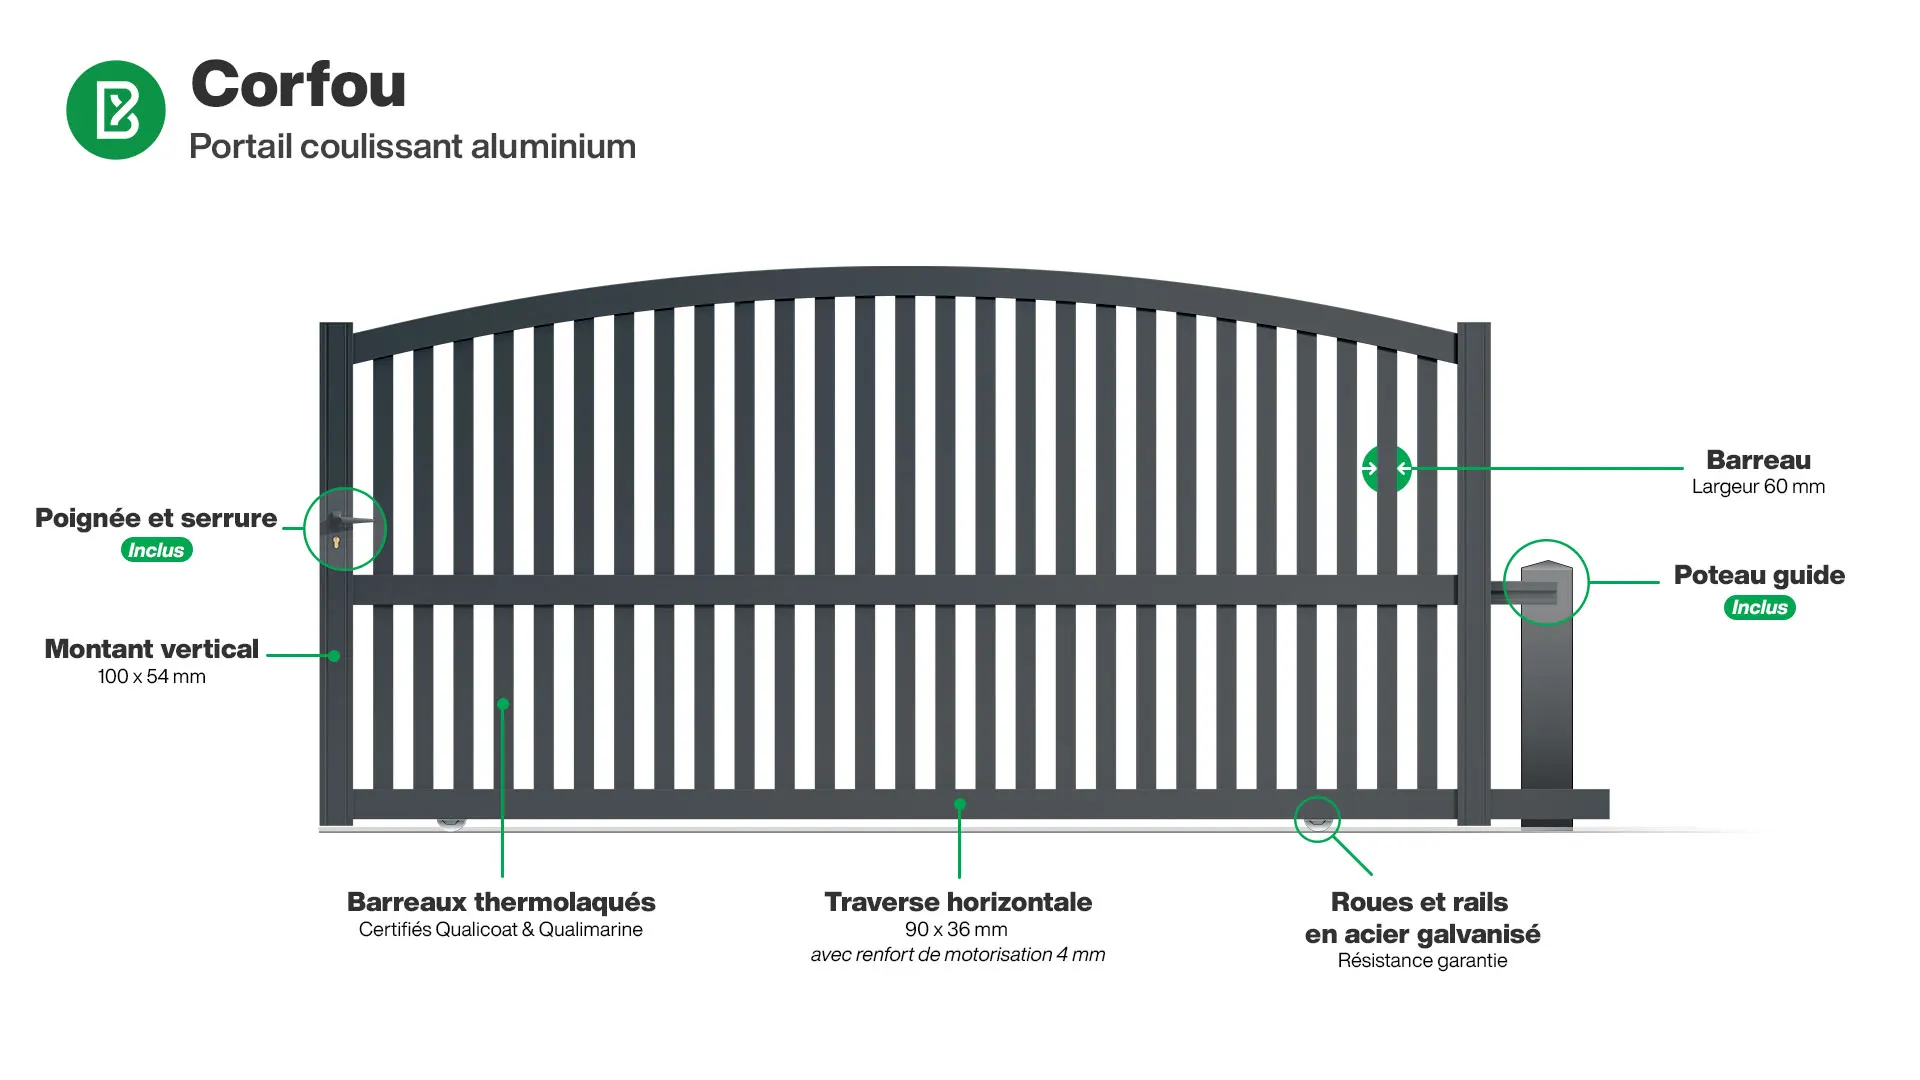 Portail : Infographie d'un portail coulissant aluminium modèle CORFOU